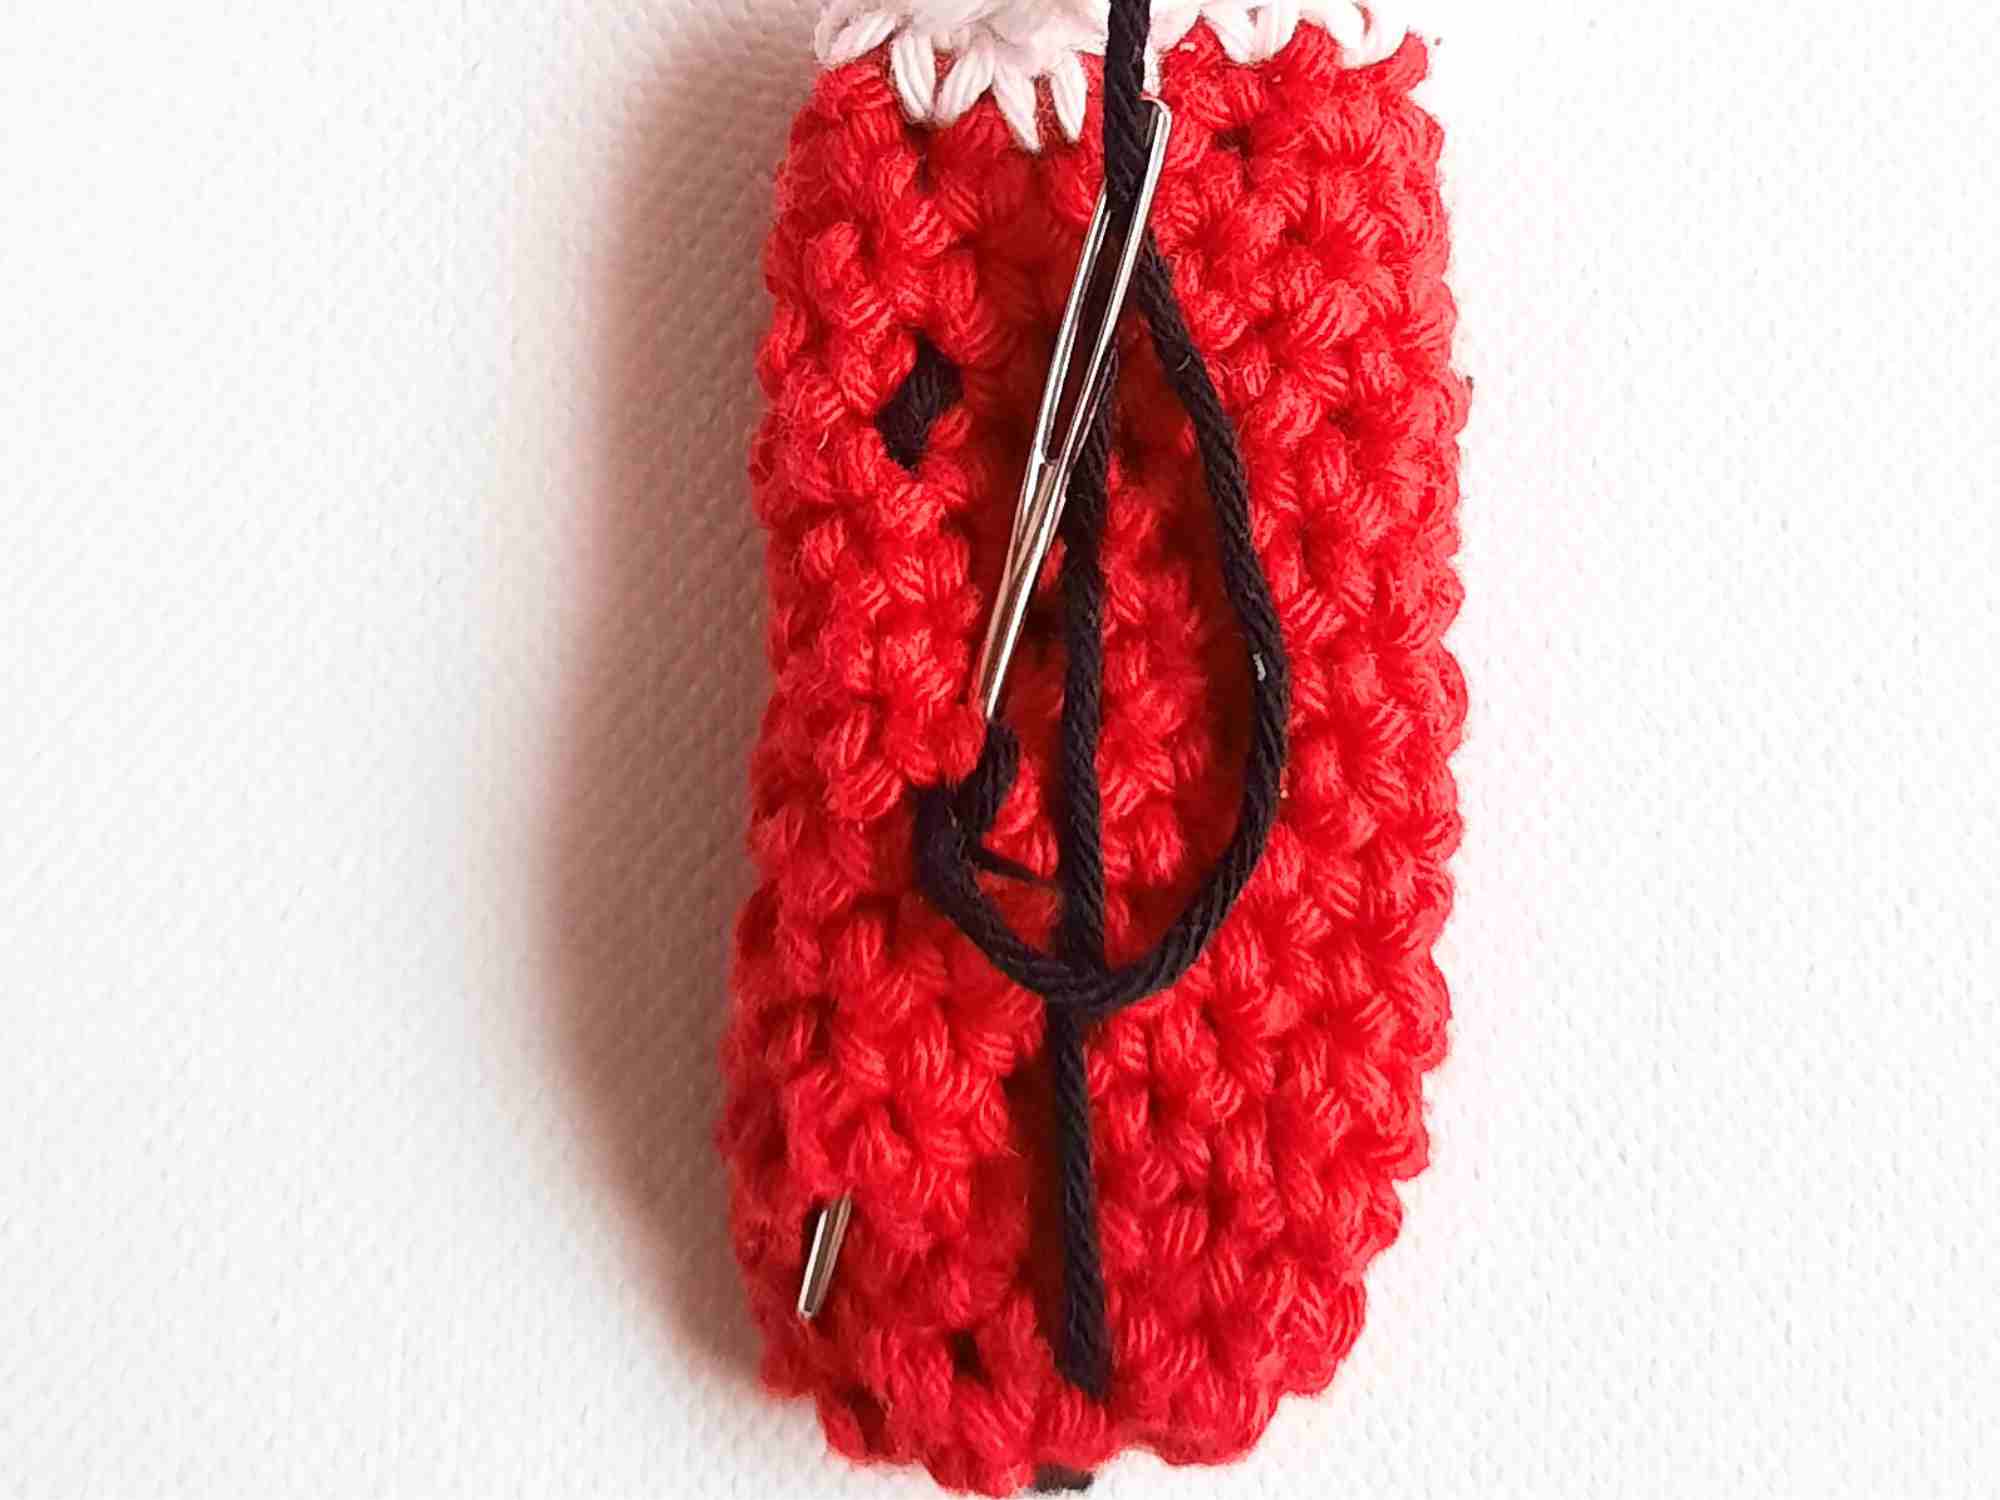 crochet ladybug tutorial